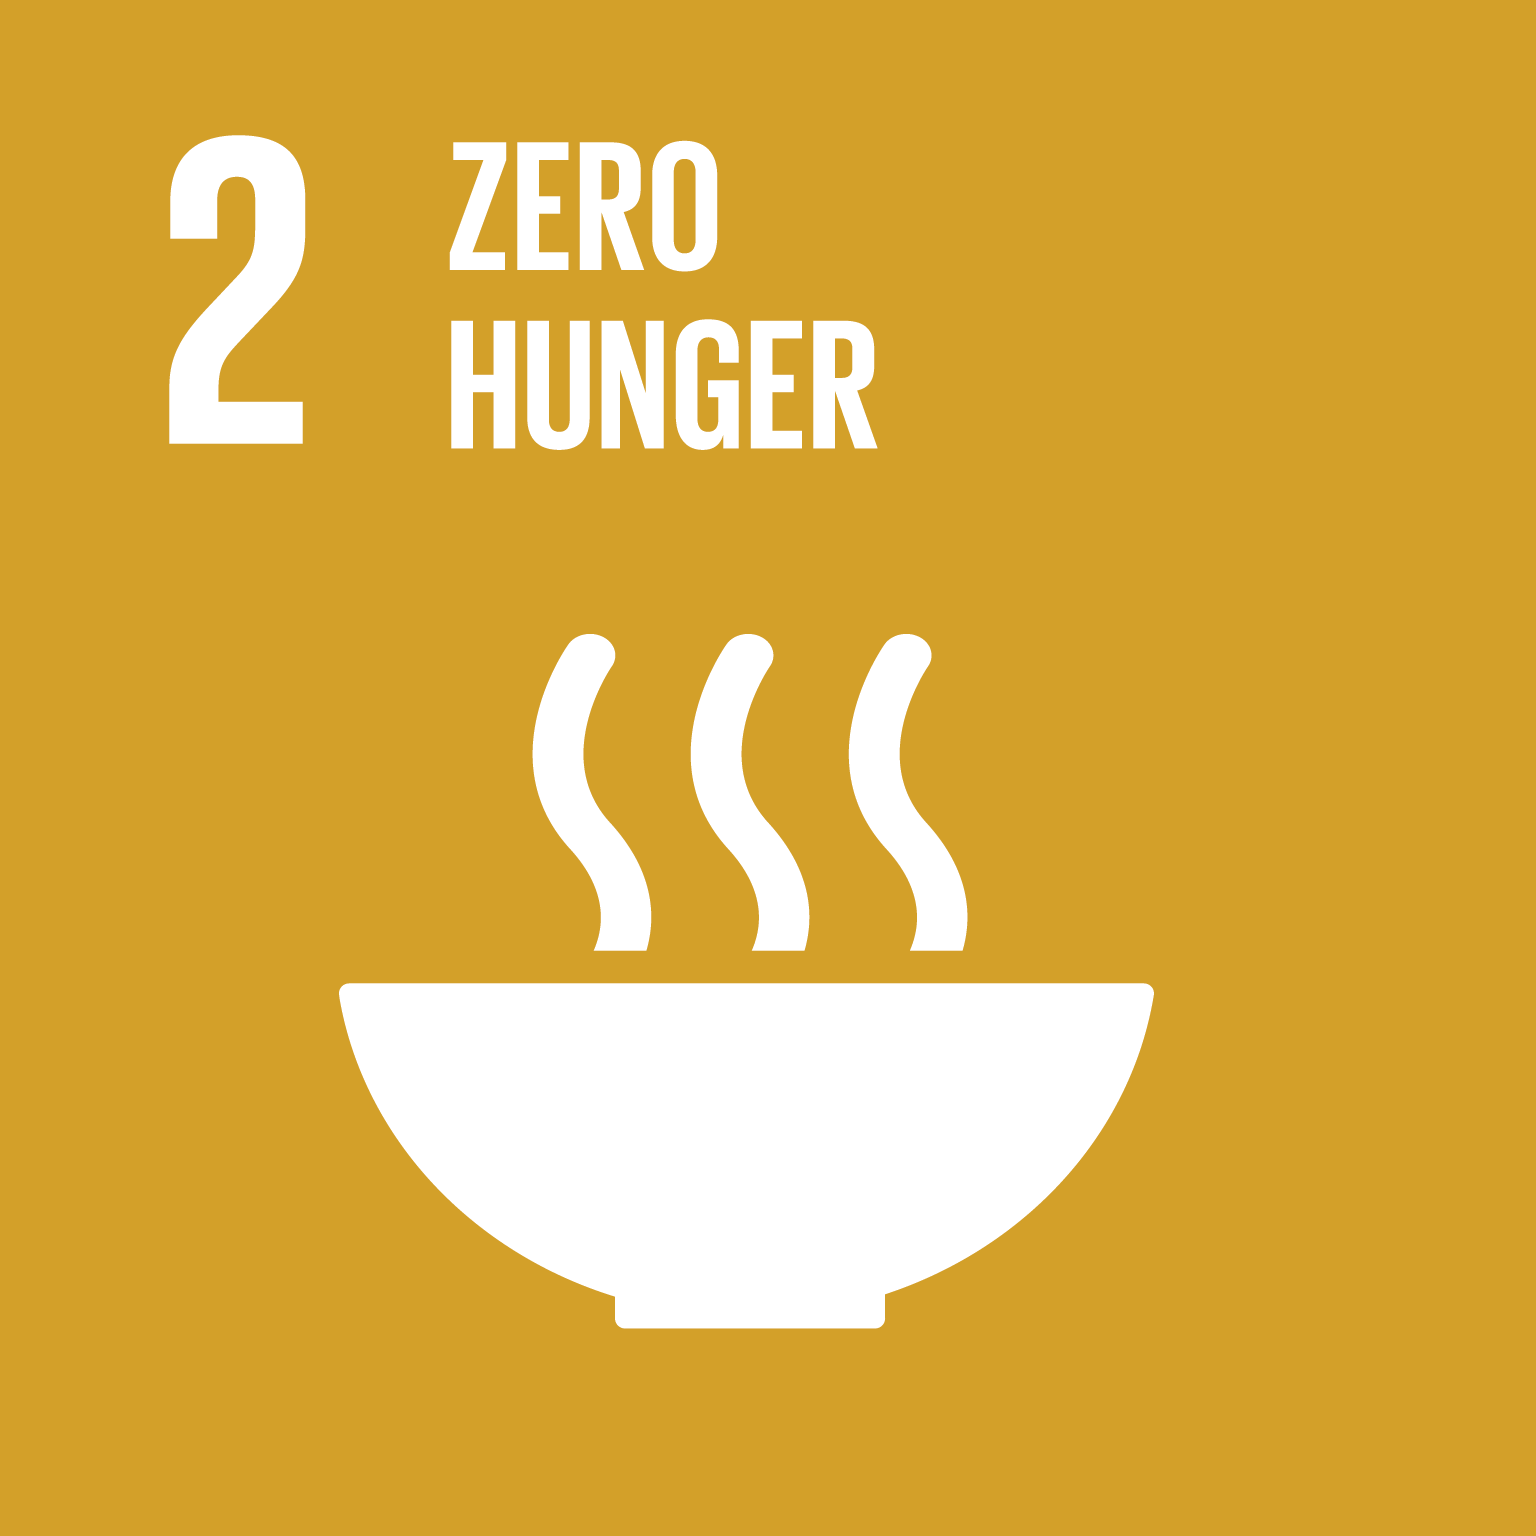 SDG 2 - End Hunger